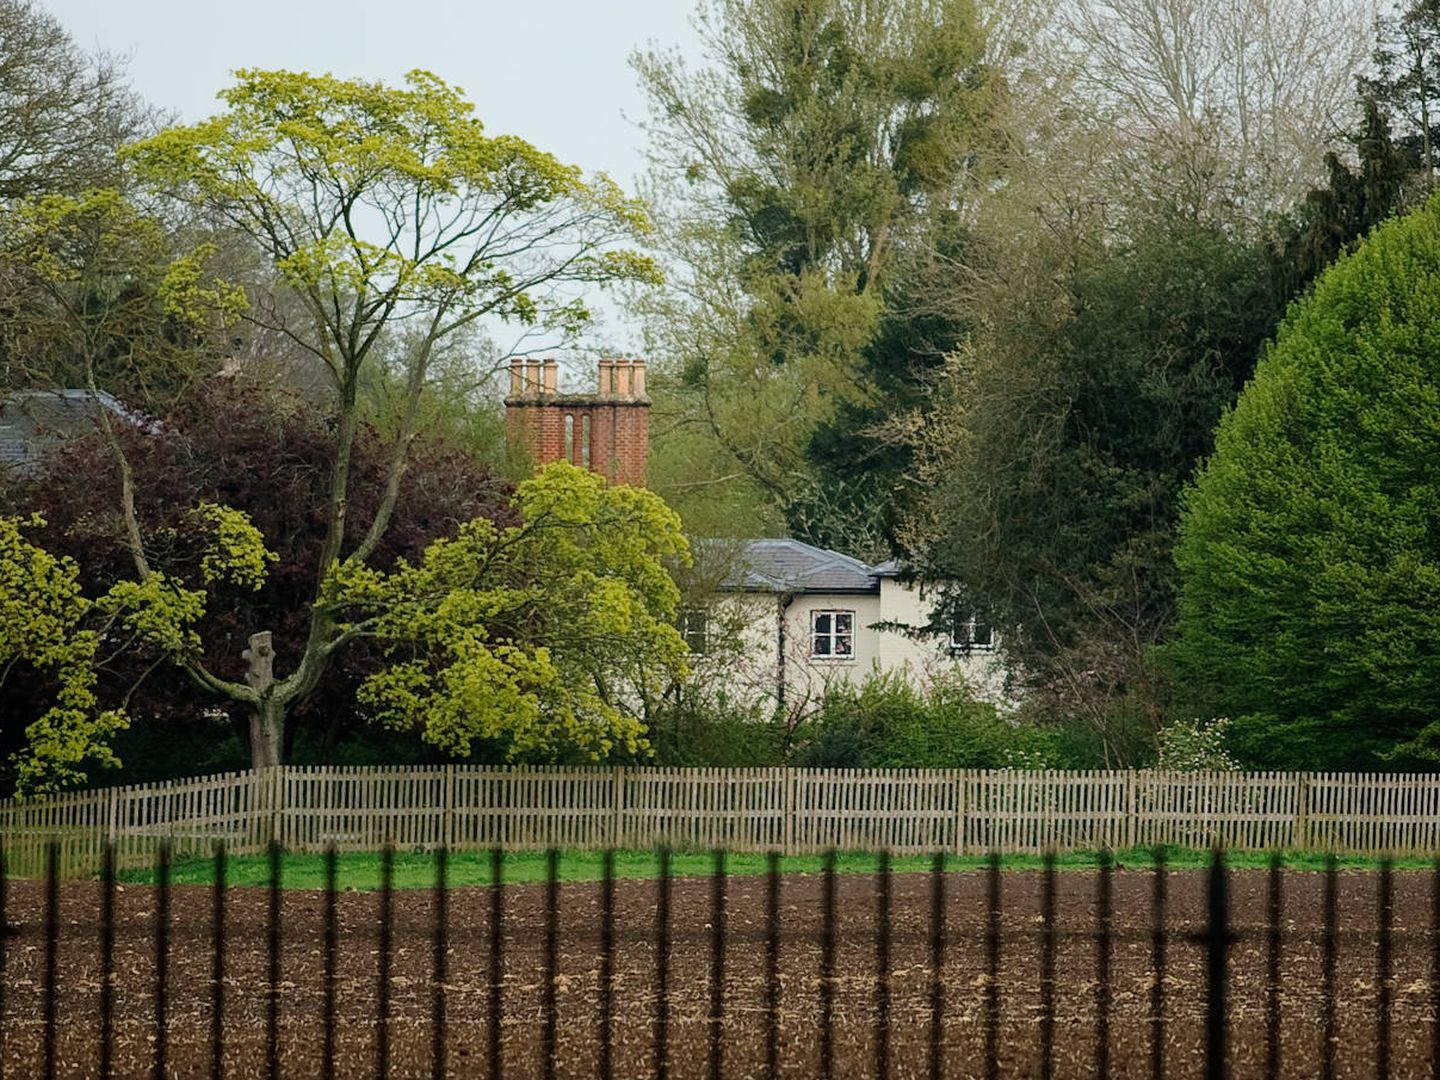 Vista de Frogmore Cottage, la que sigue siendo residencia de Meghan y Harry en Reino Unido. (Getty)